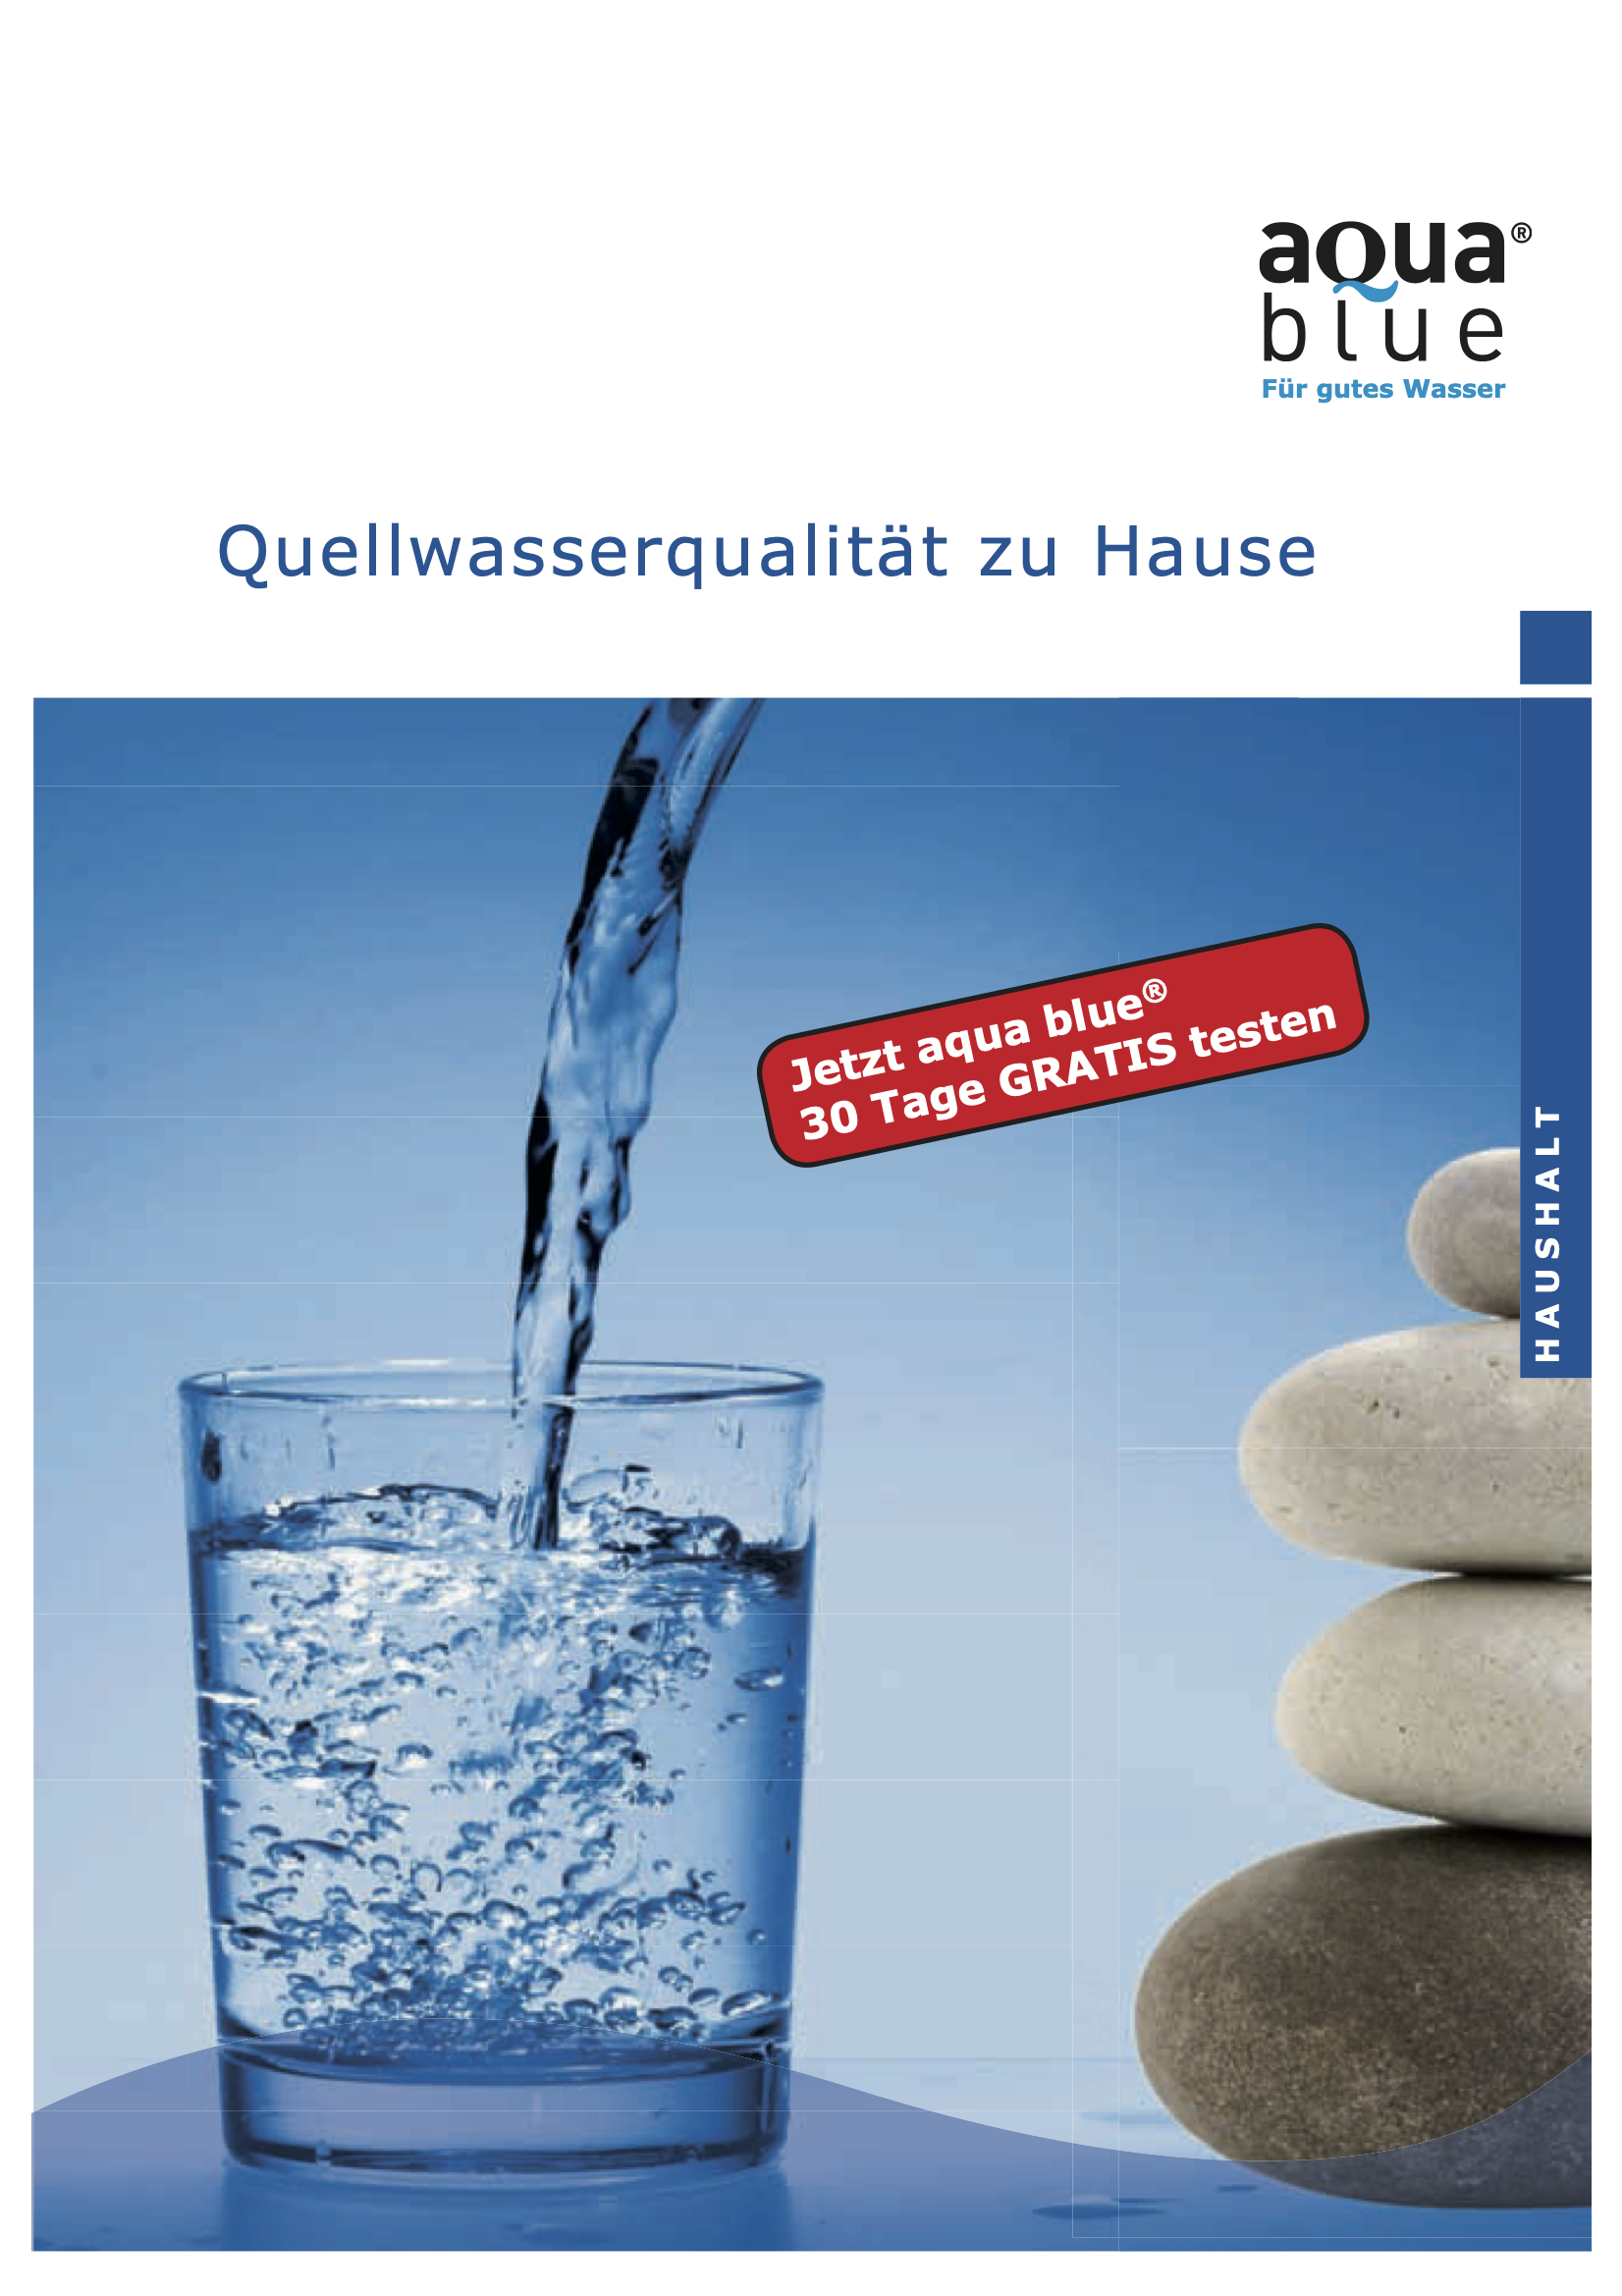 Titelbild der aqua blue Broschüre Quellwasserqualität zu Hause